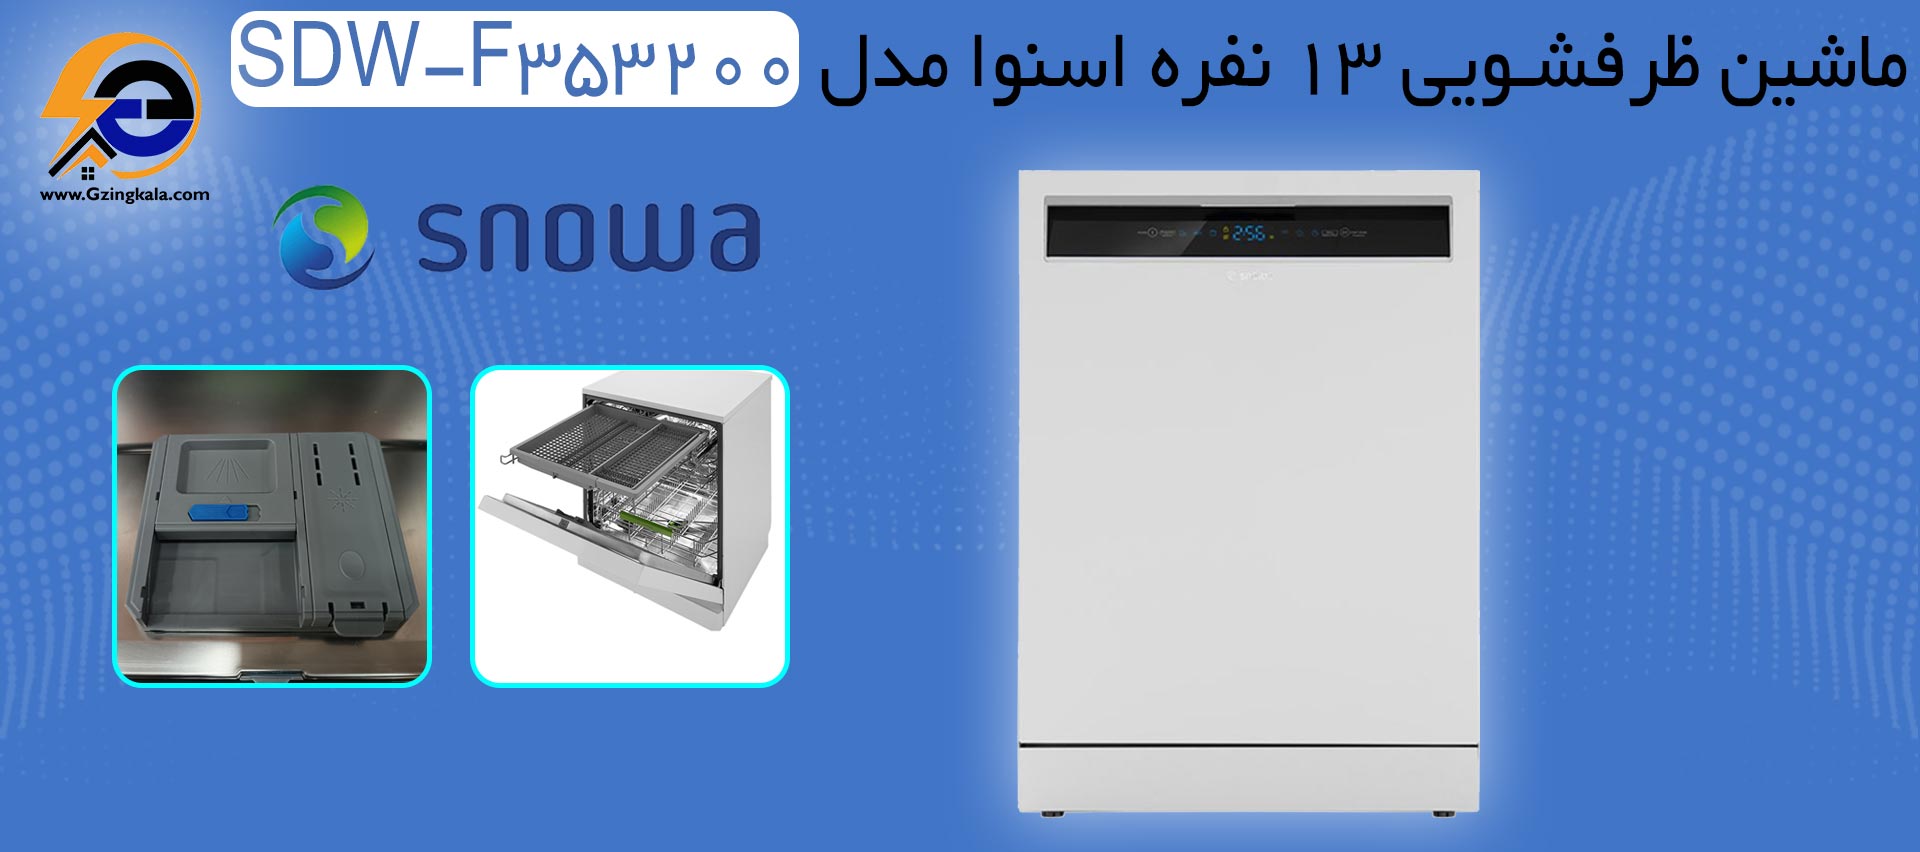 ماشین ظرفشویی 13 نفره اسنوا مدل SDW-F353200